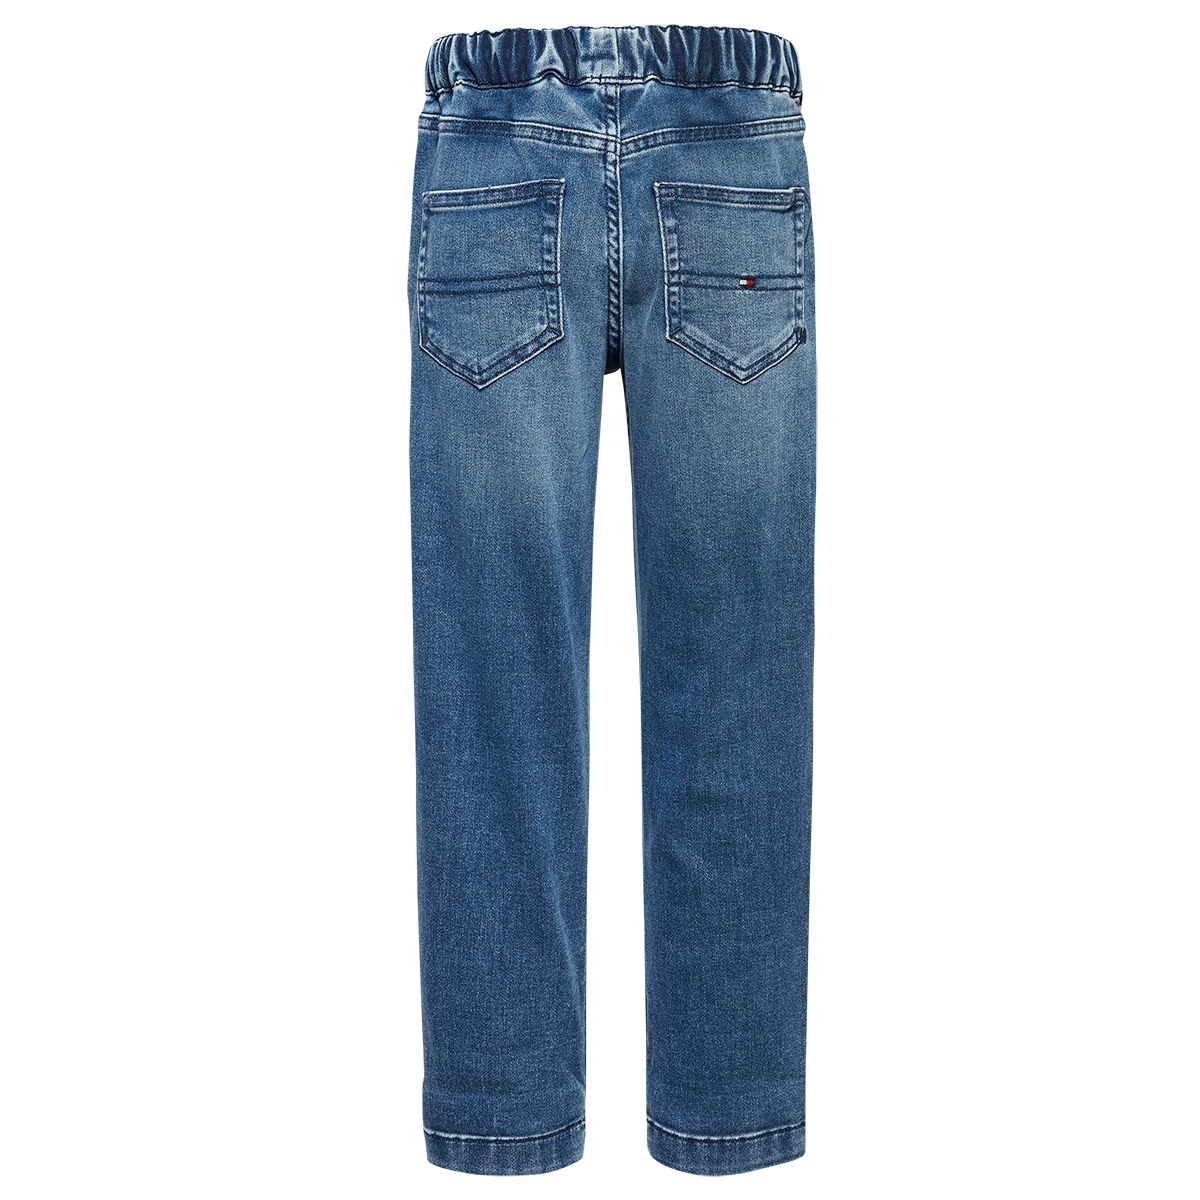 Tommy Hilfiger Jeans On 6843 Sliga Washed Blue